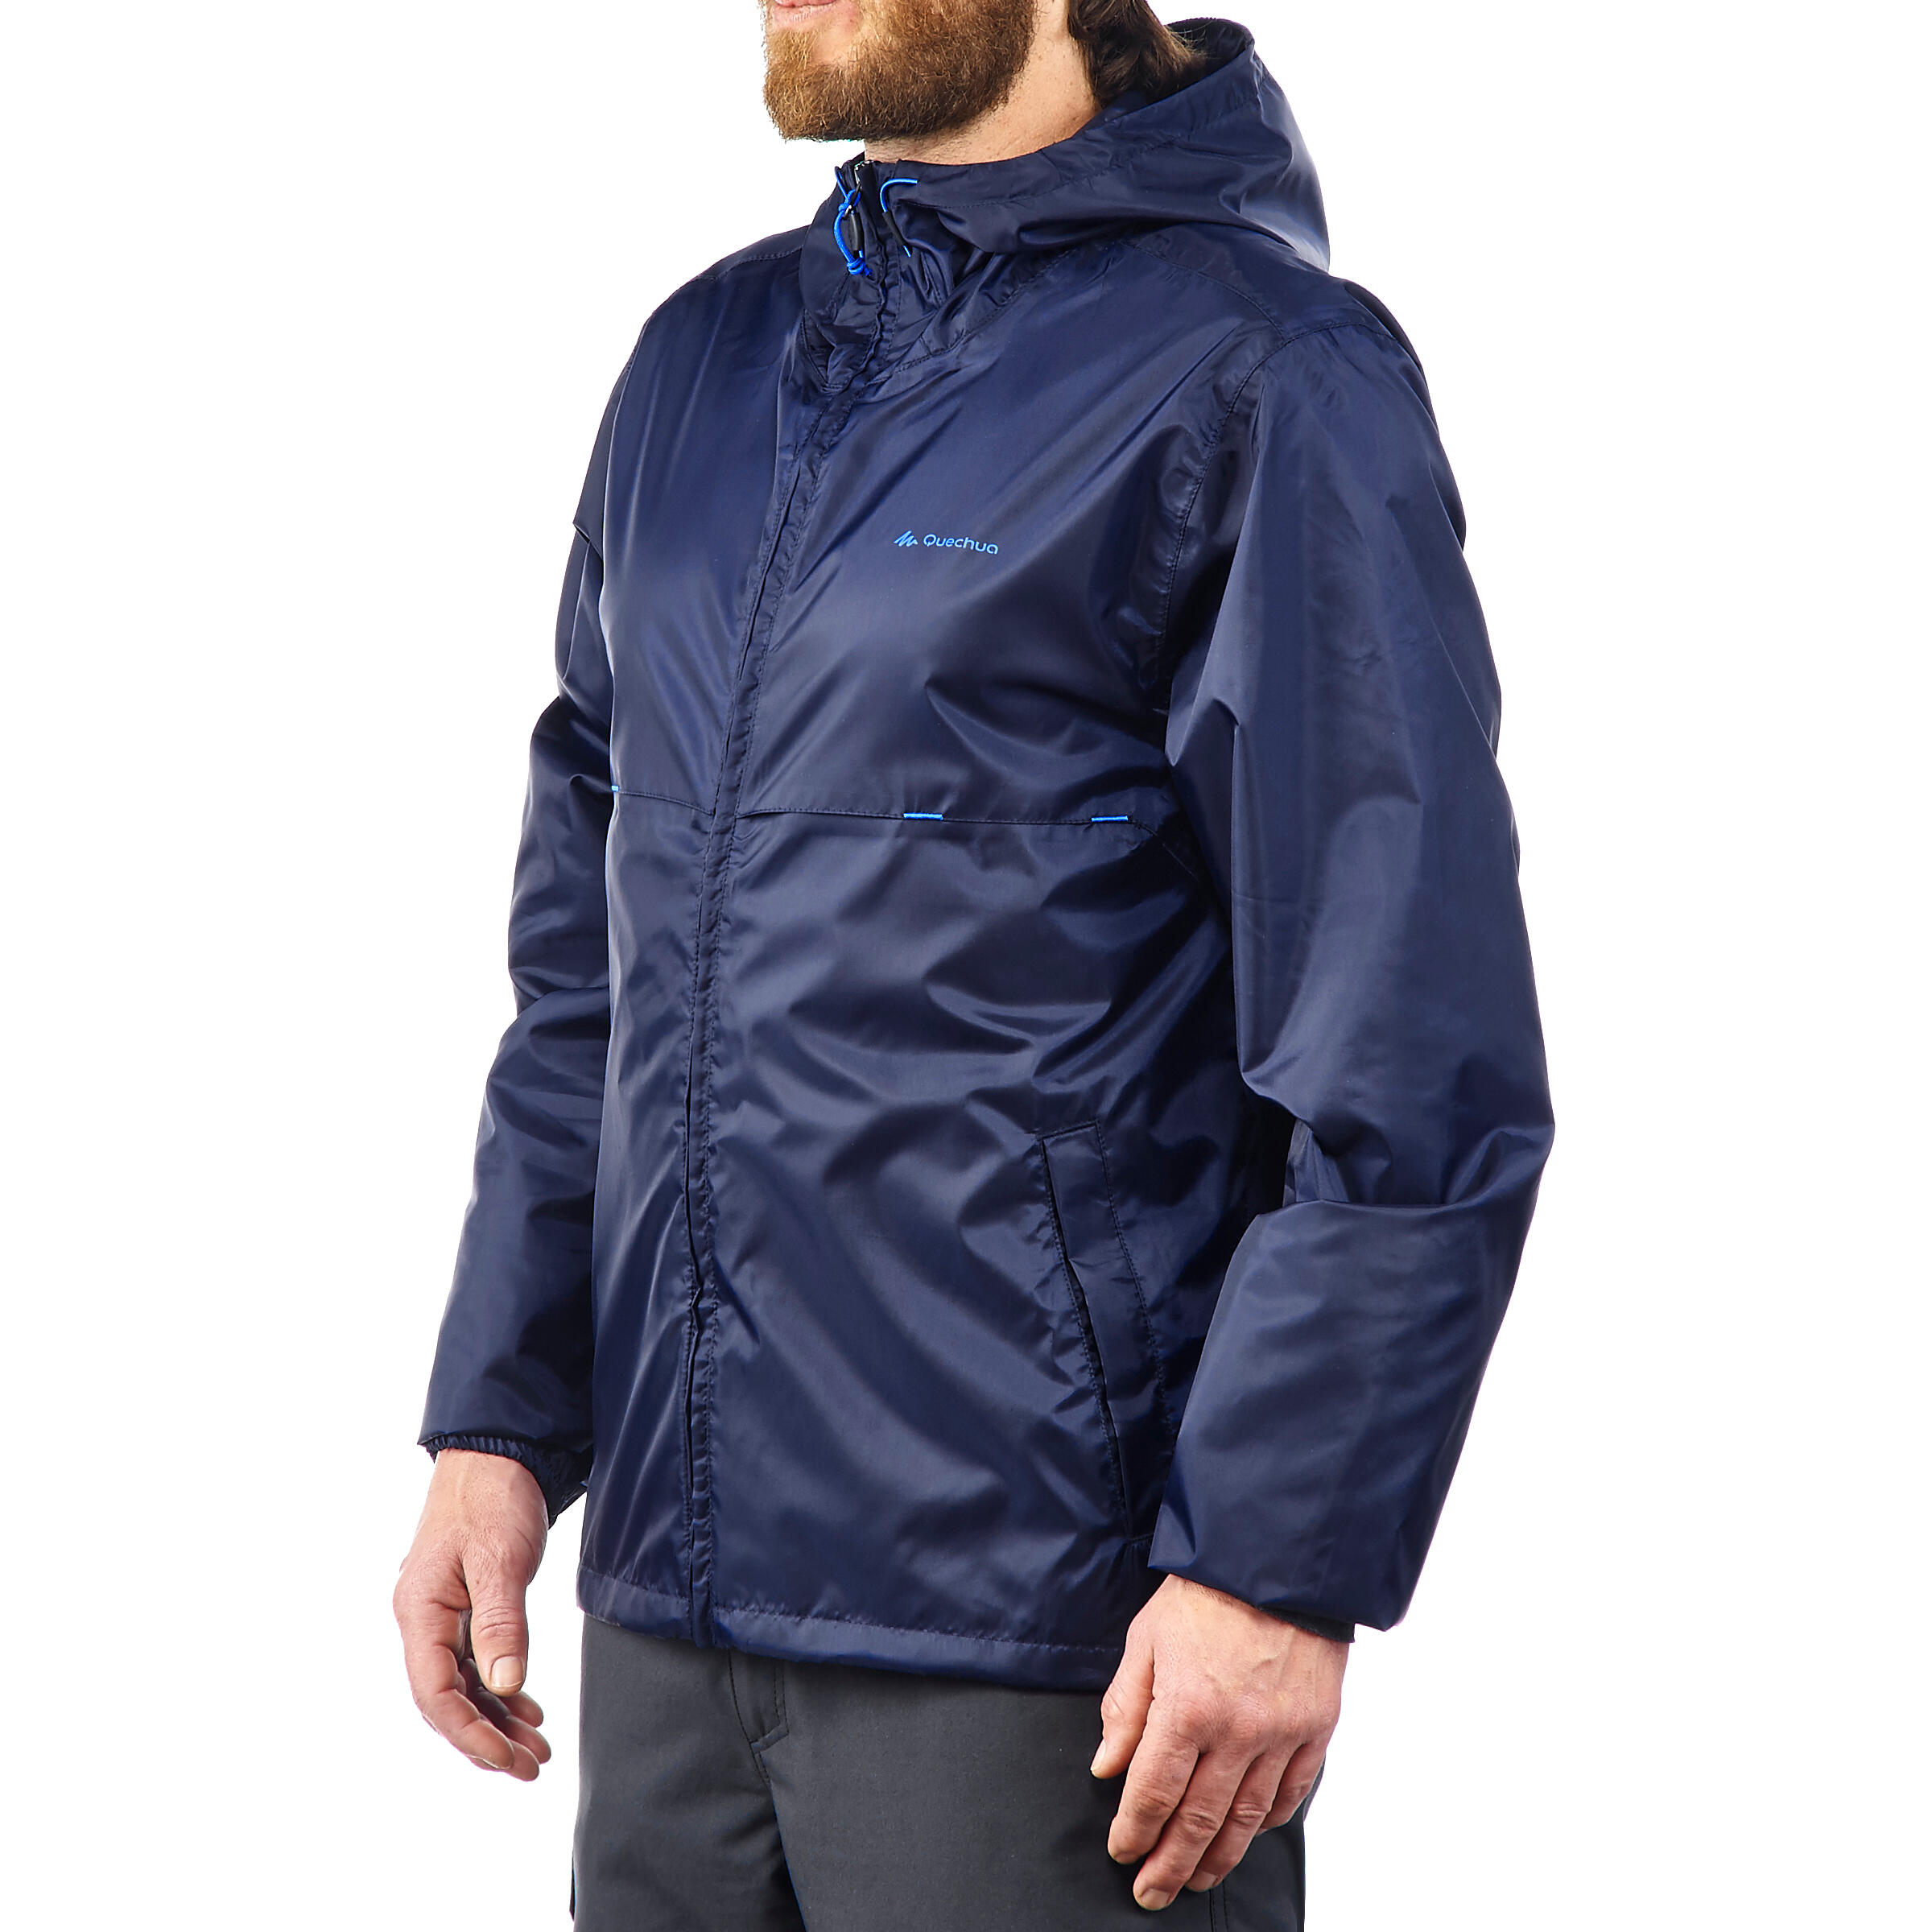 decathlon waterproof jacket mens